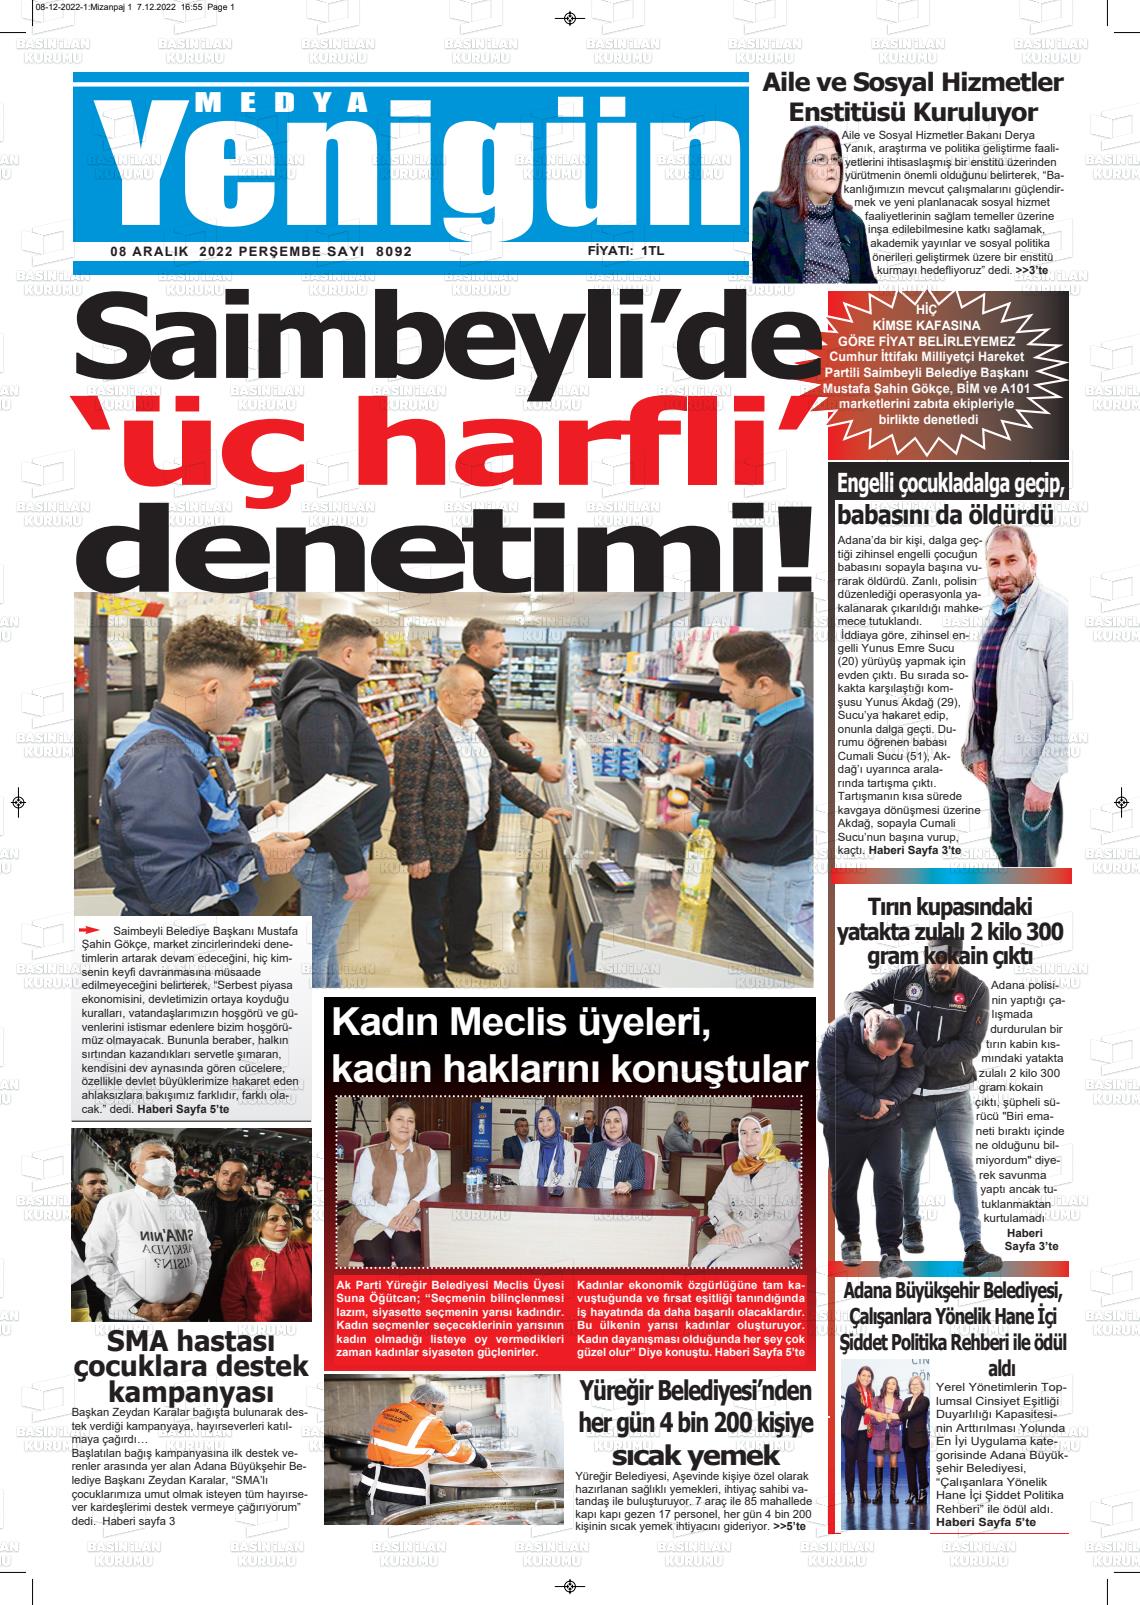 08 Aralık 2022 Medya Yenigün Gazete Manşeti